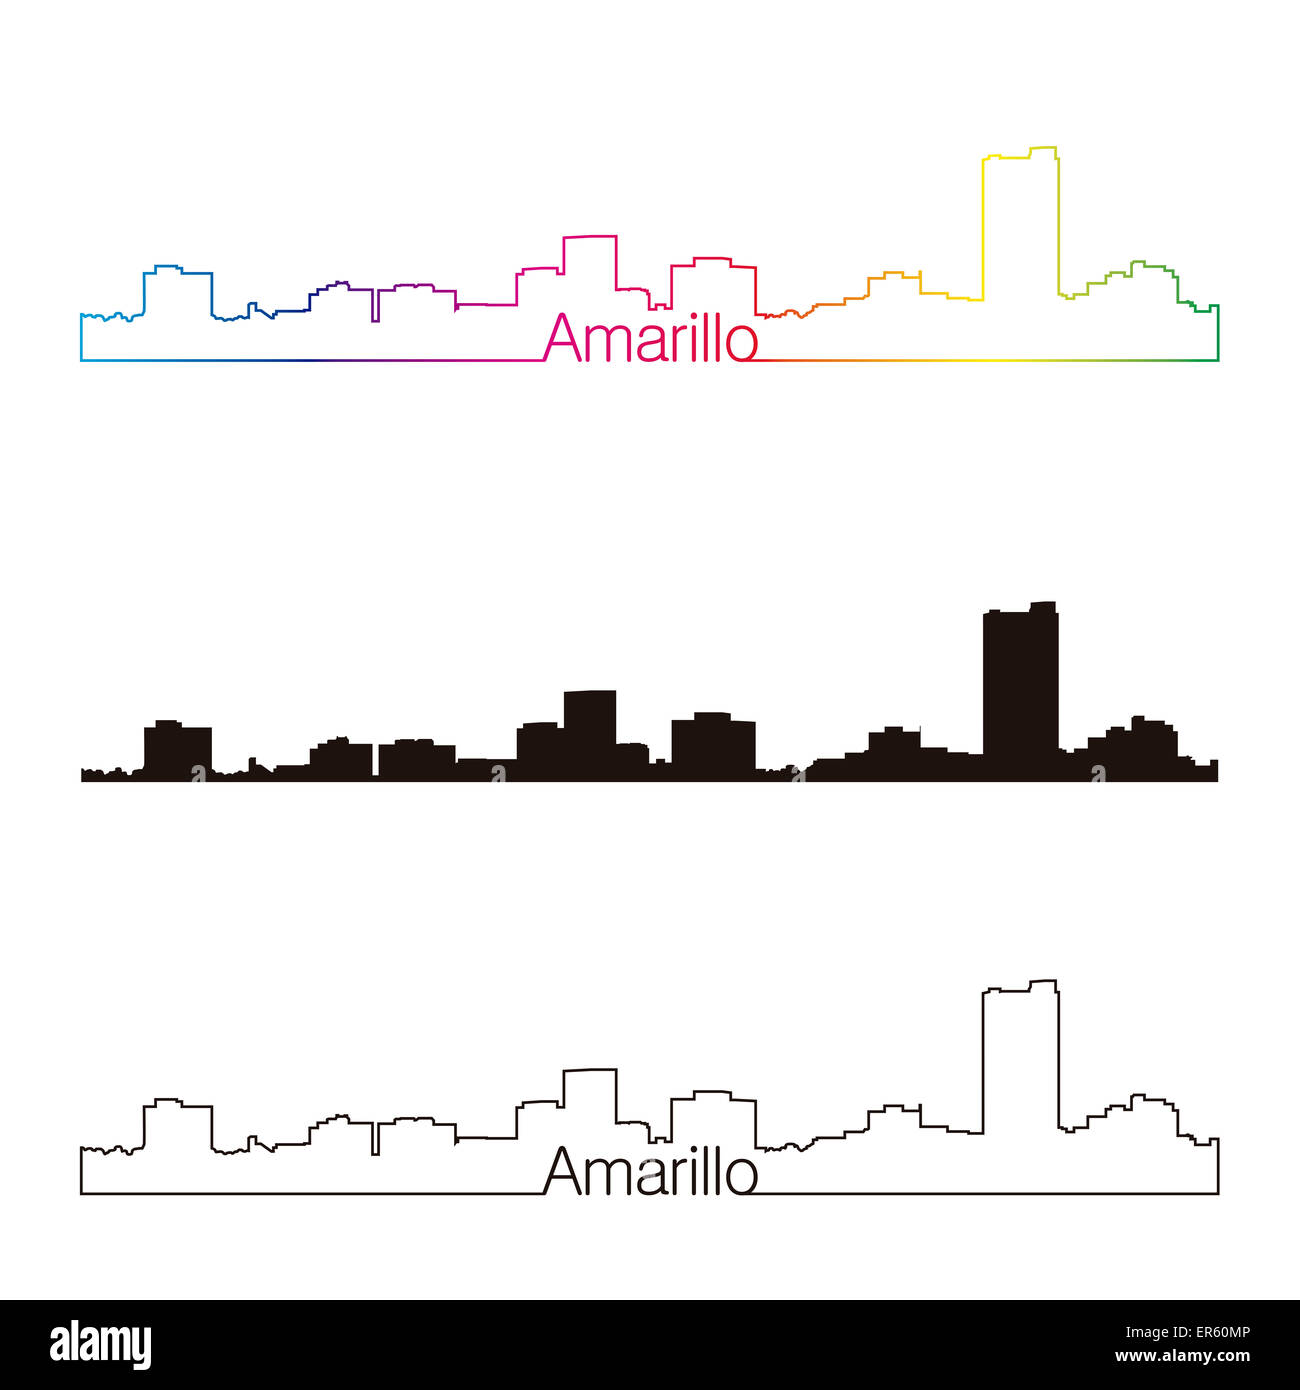 Amarillo skyline style linéaire avec rainbow en fichier vectoriel éditable Banque D'Images